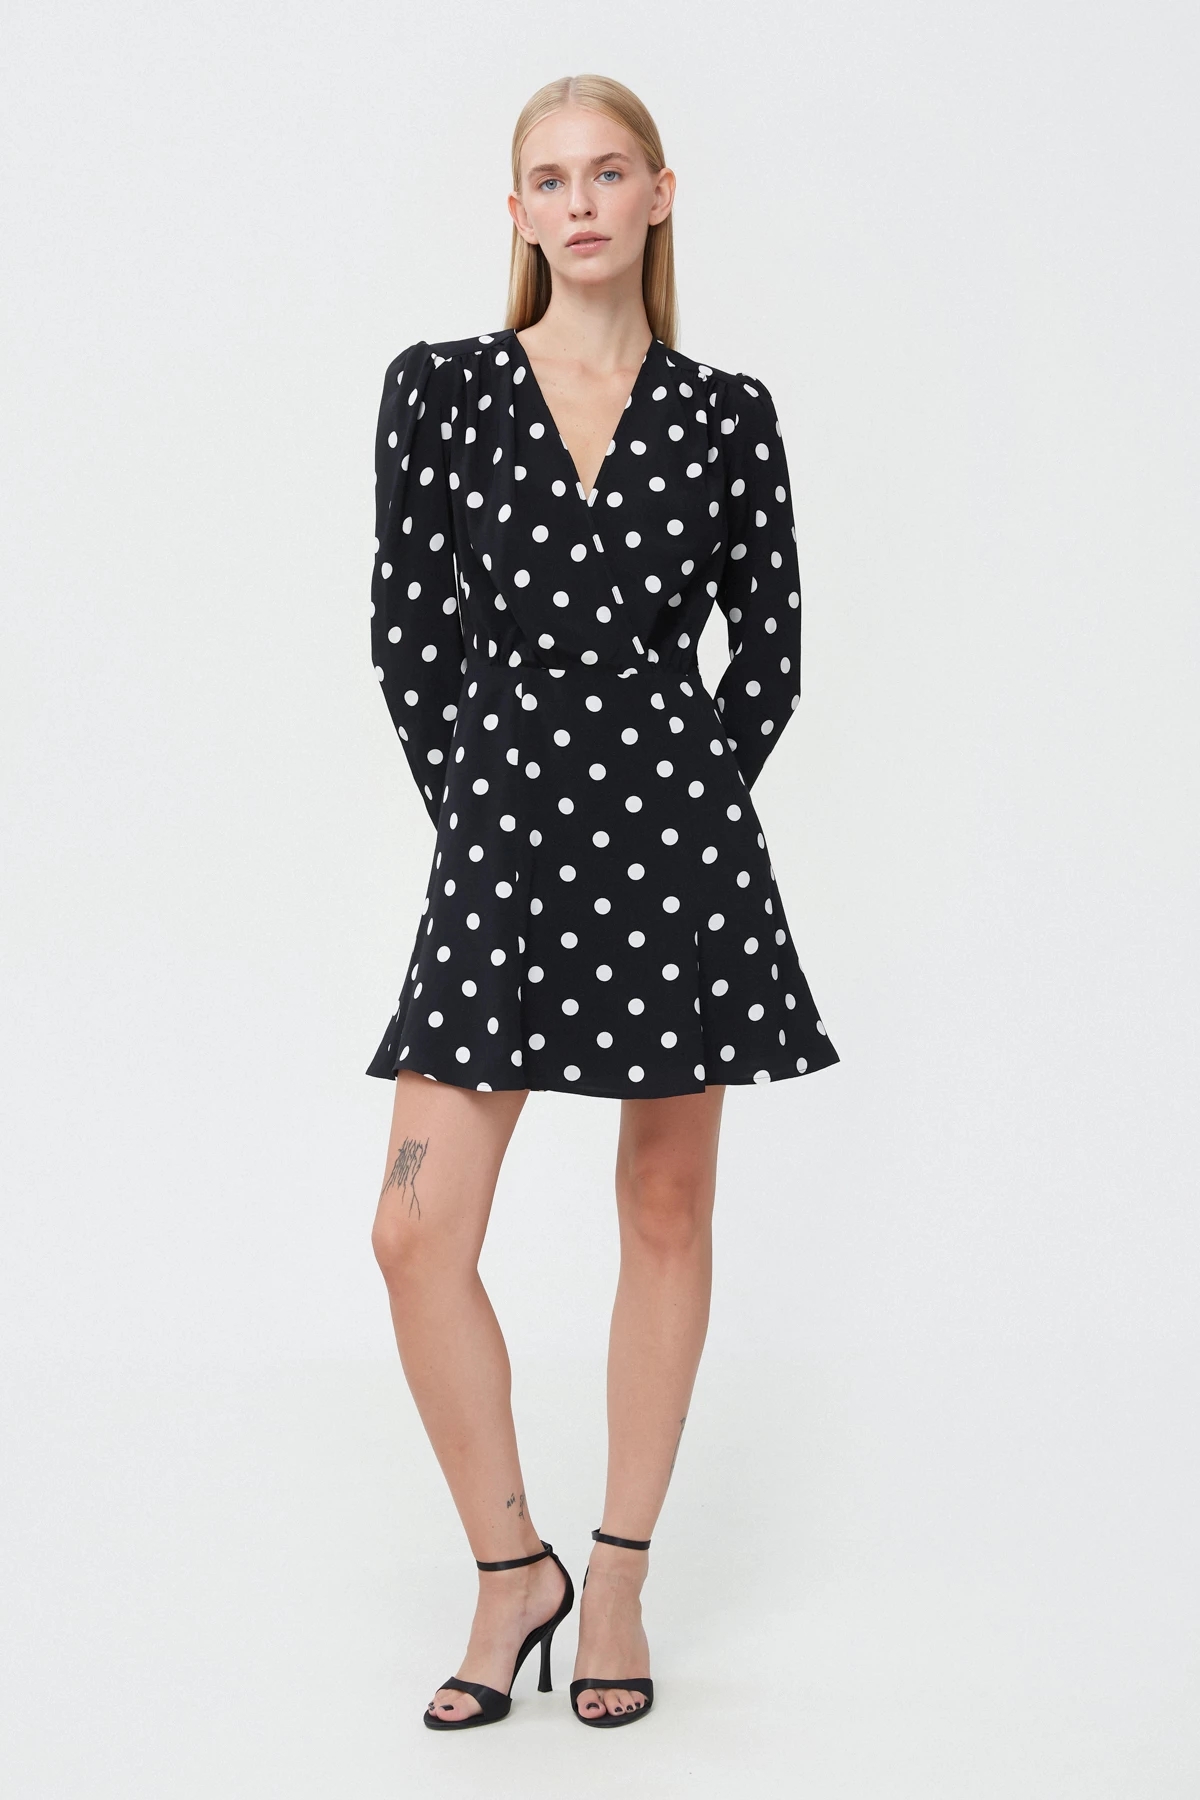 Short black viscose dress with polka dot print, photo 3